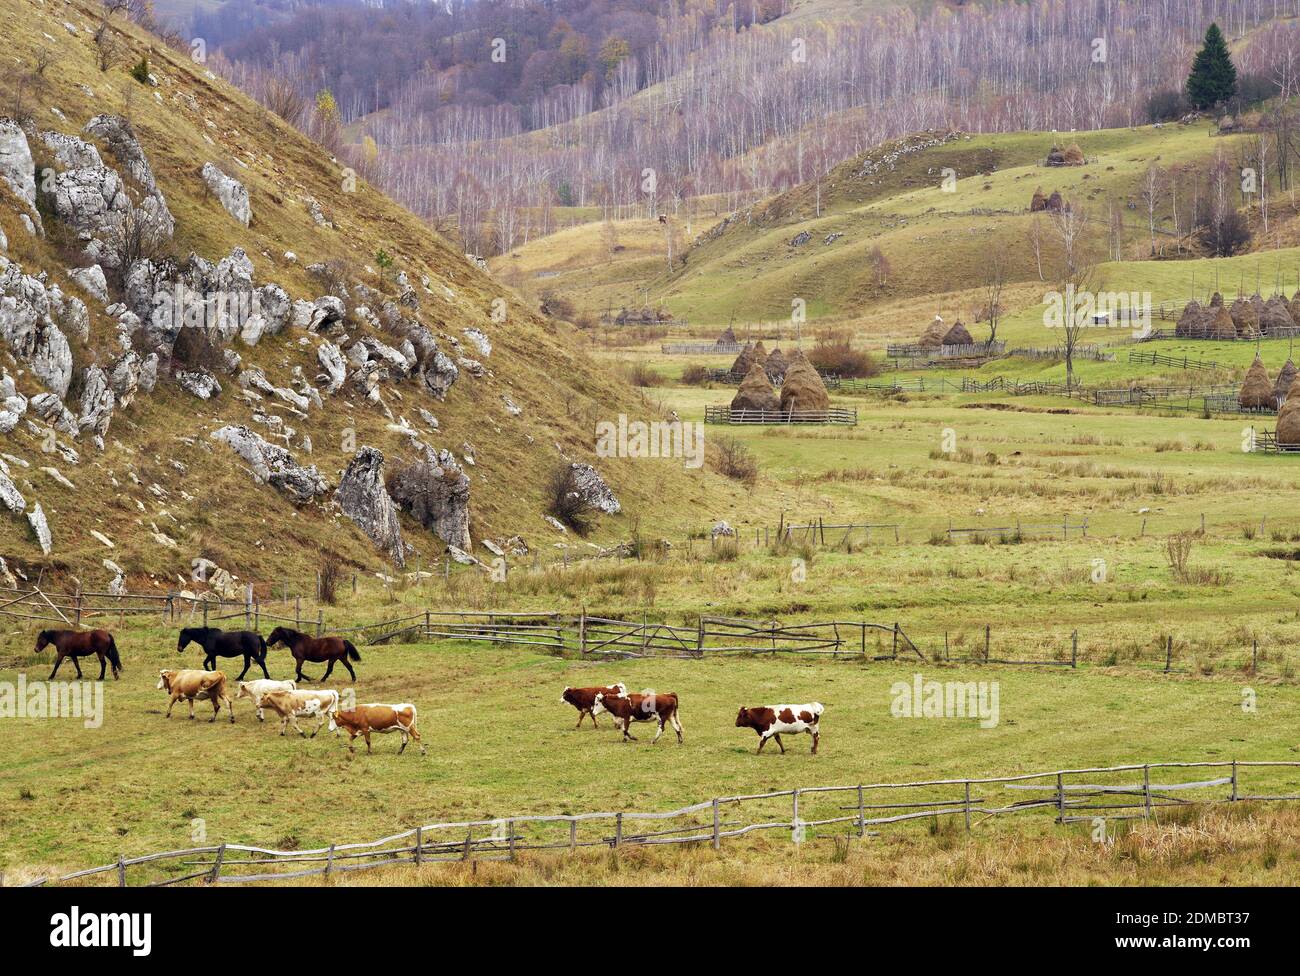 Vista en ángulo alto de vacas y caballos en el campo de grassy Foto de stock